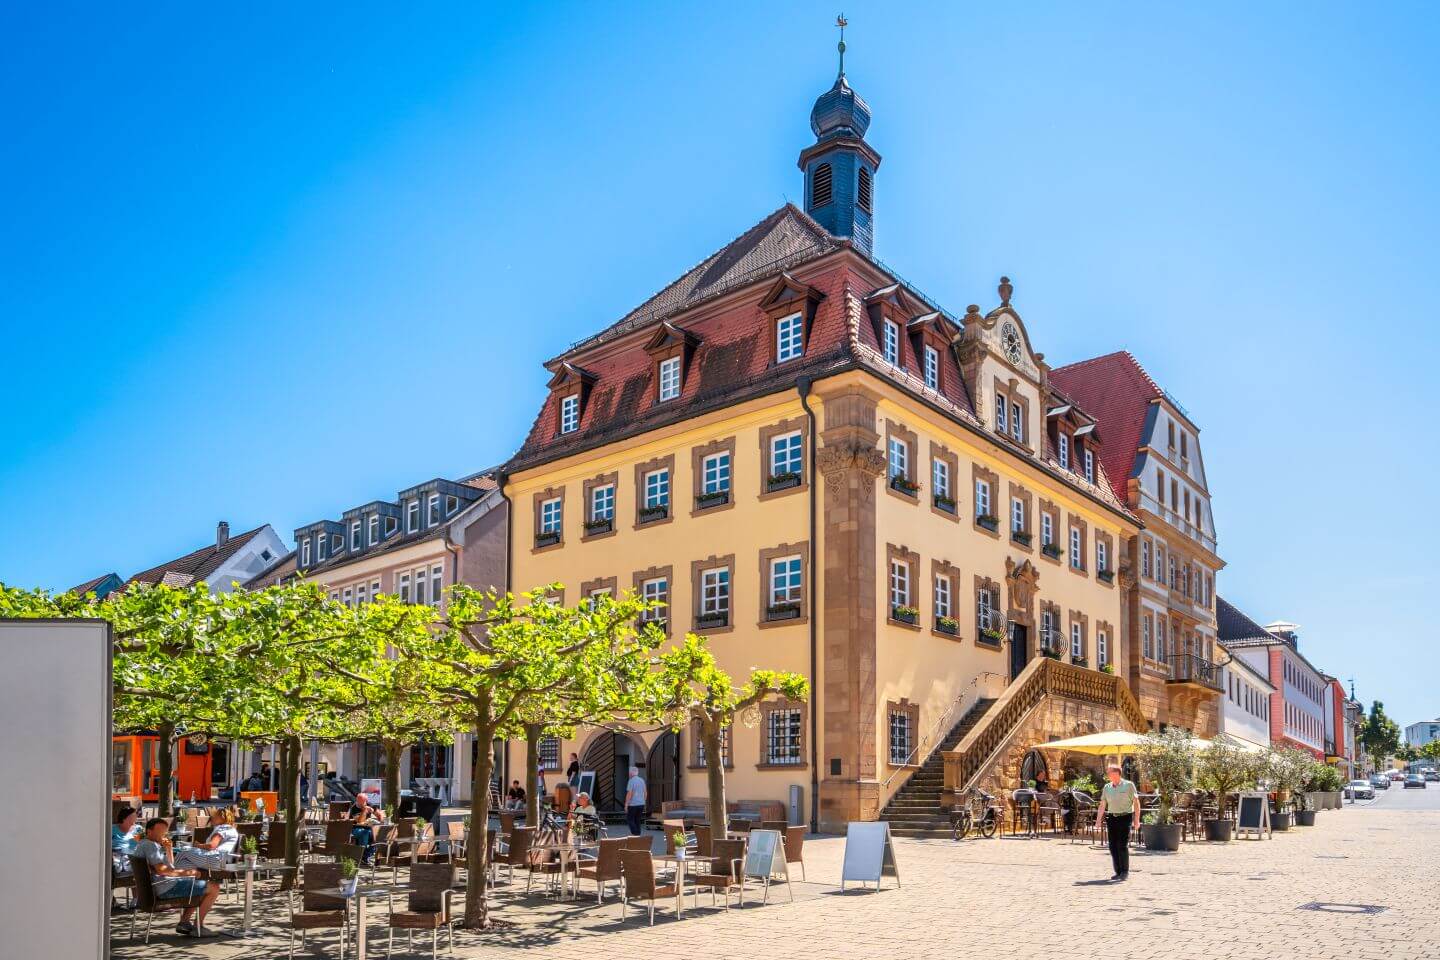 Markt in Neckarsulm